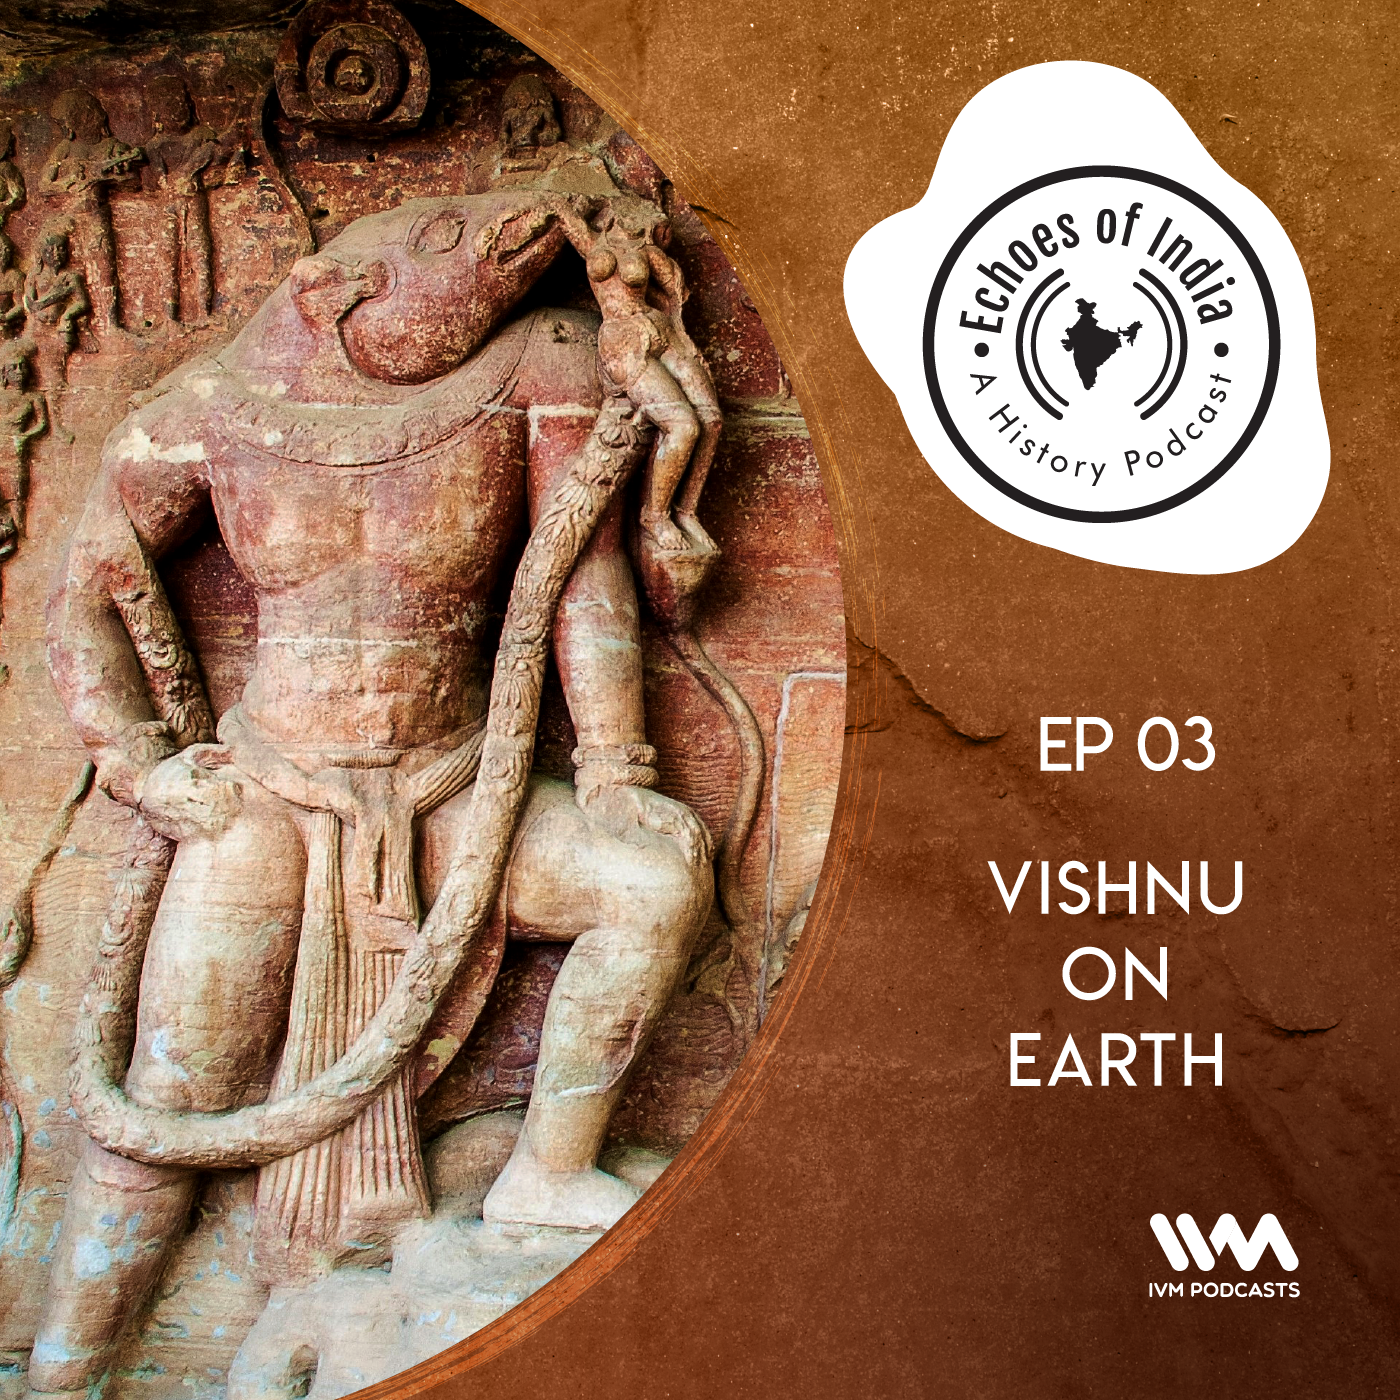 Vishnu on Earth